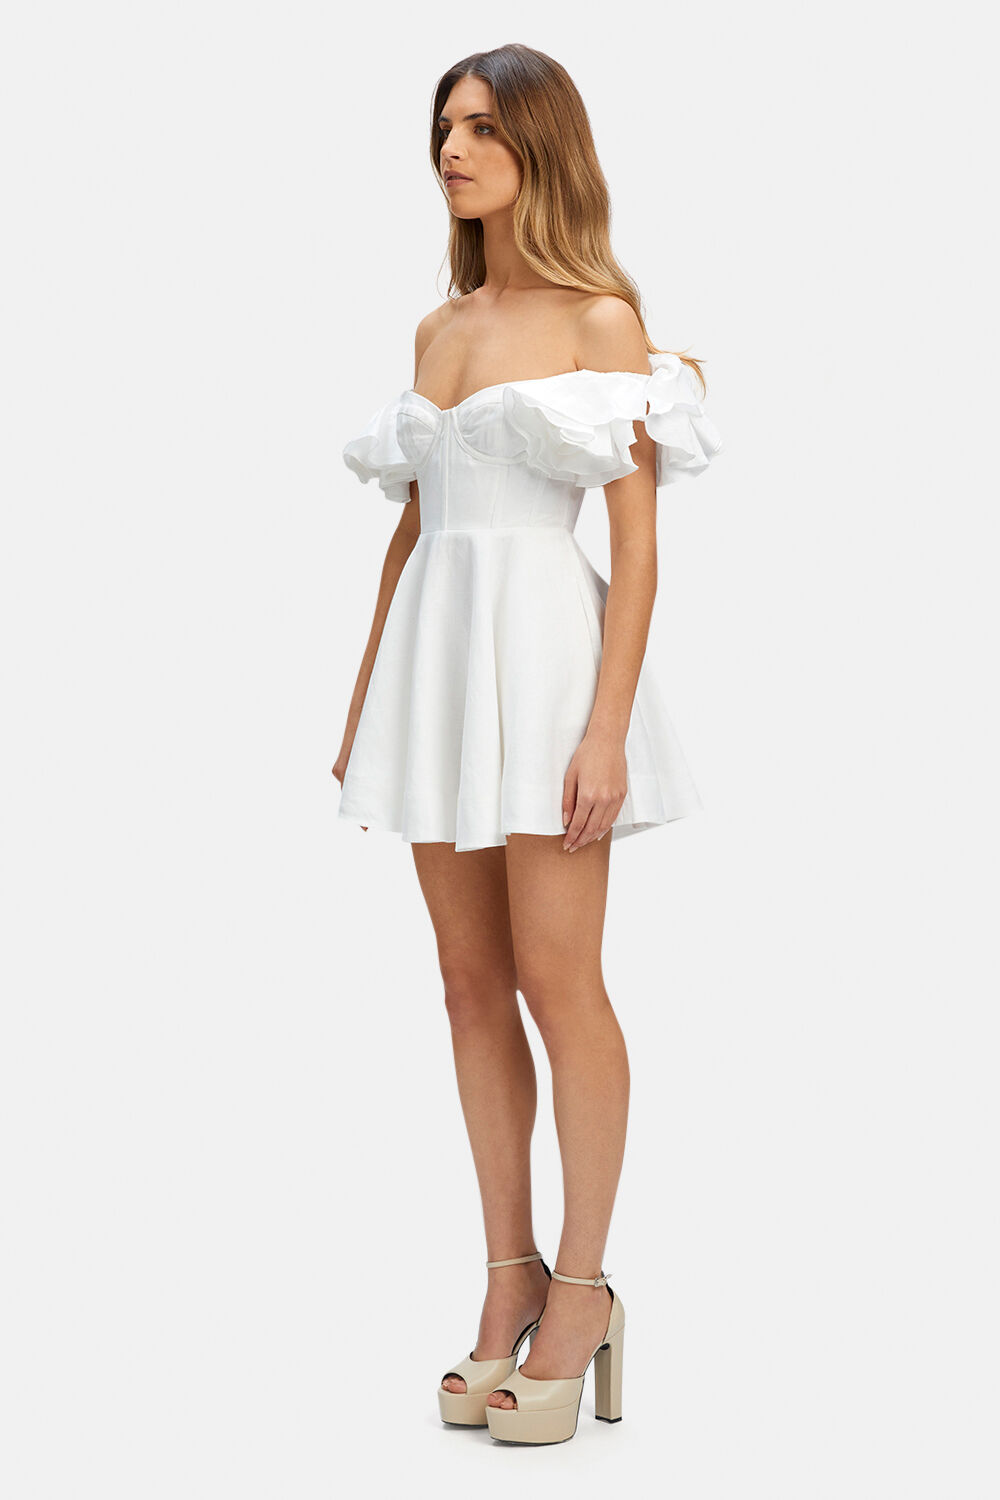 SIGMA MINI DRESS in colour BRIGHT WHITE